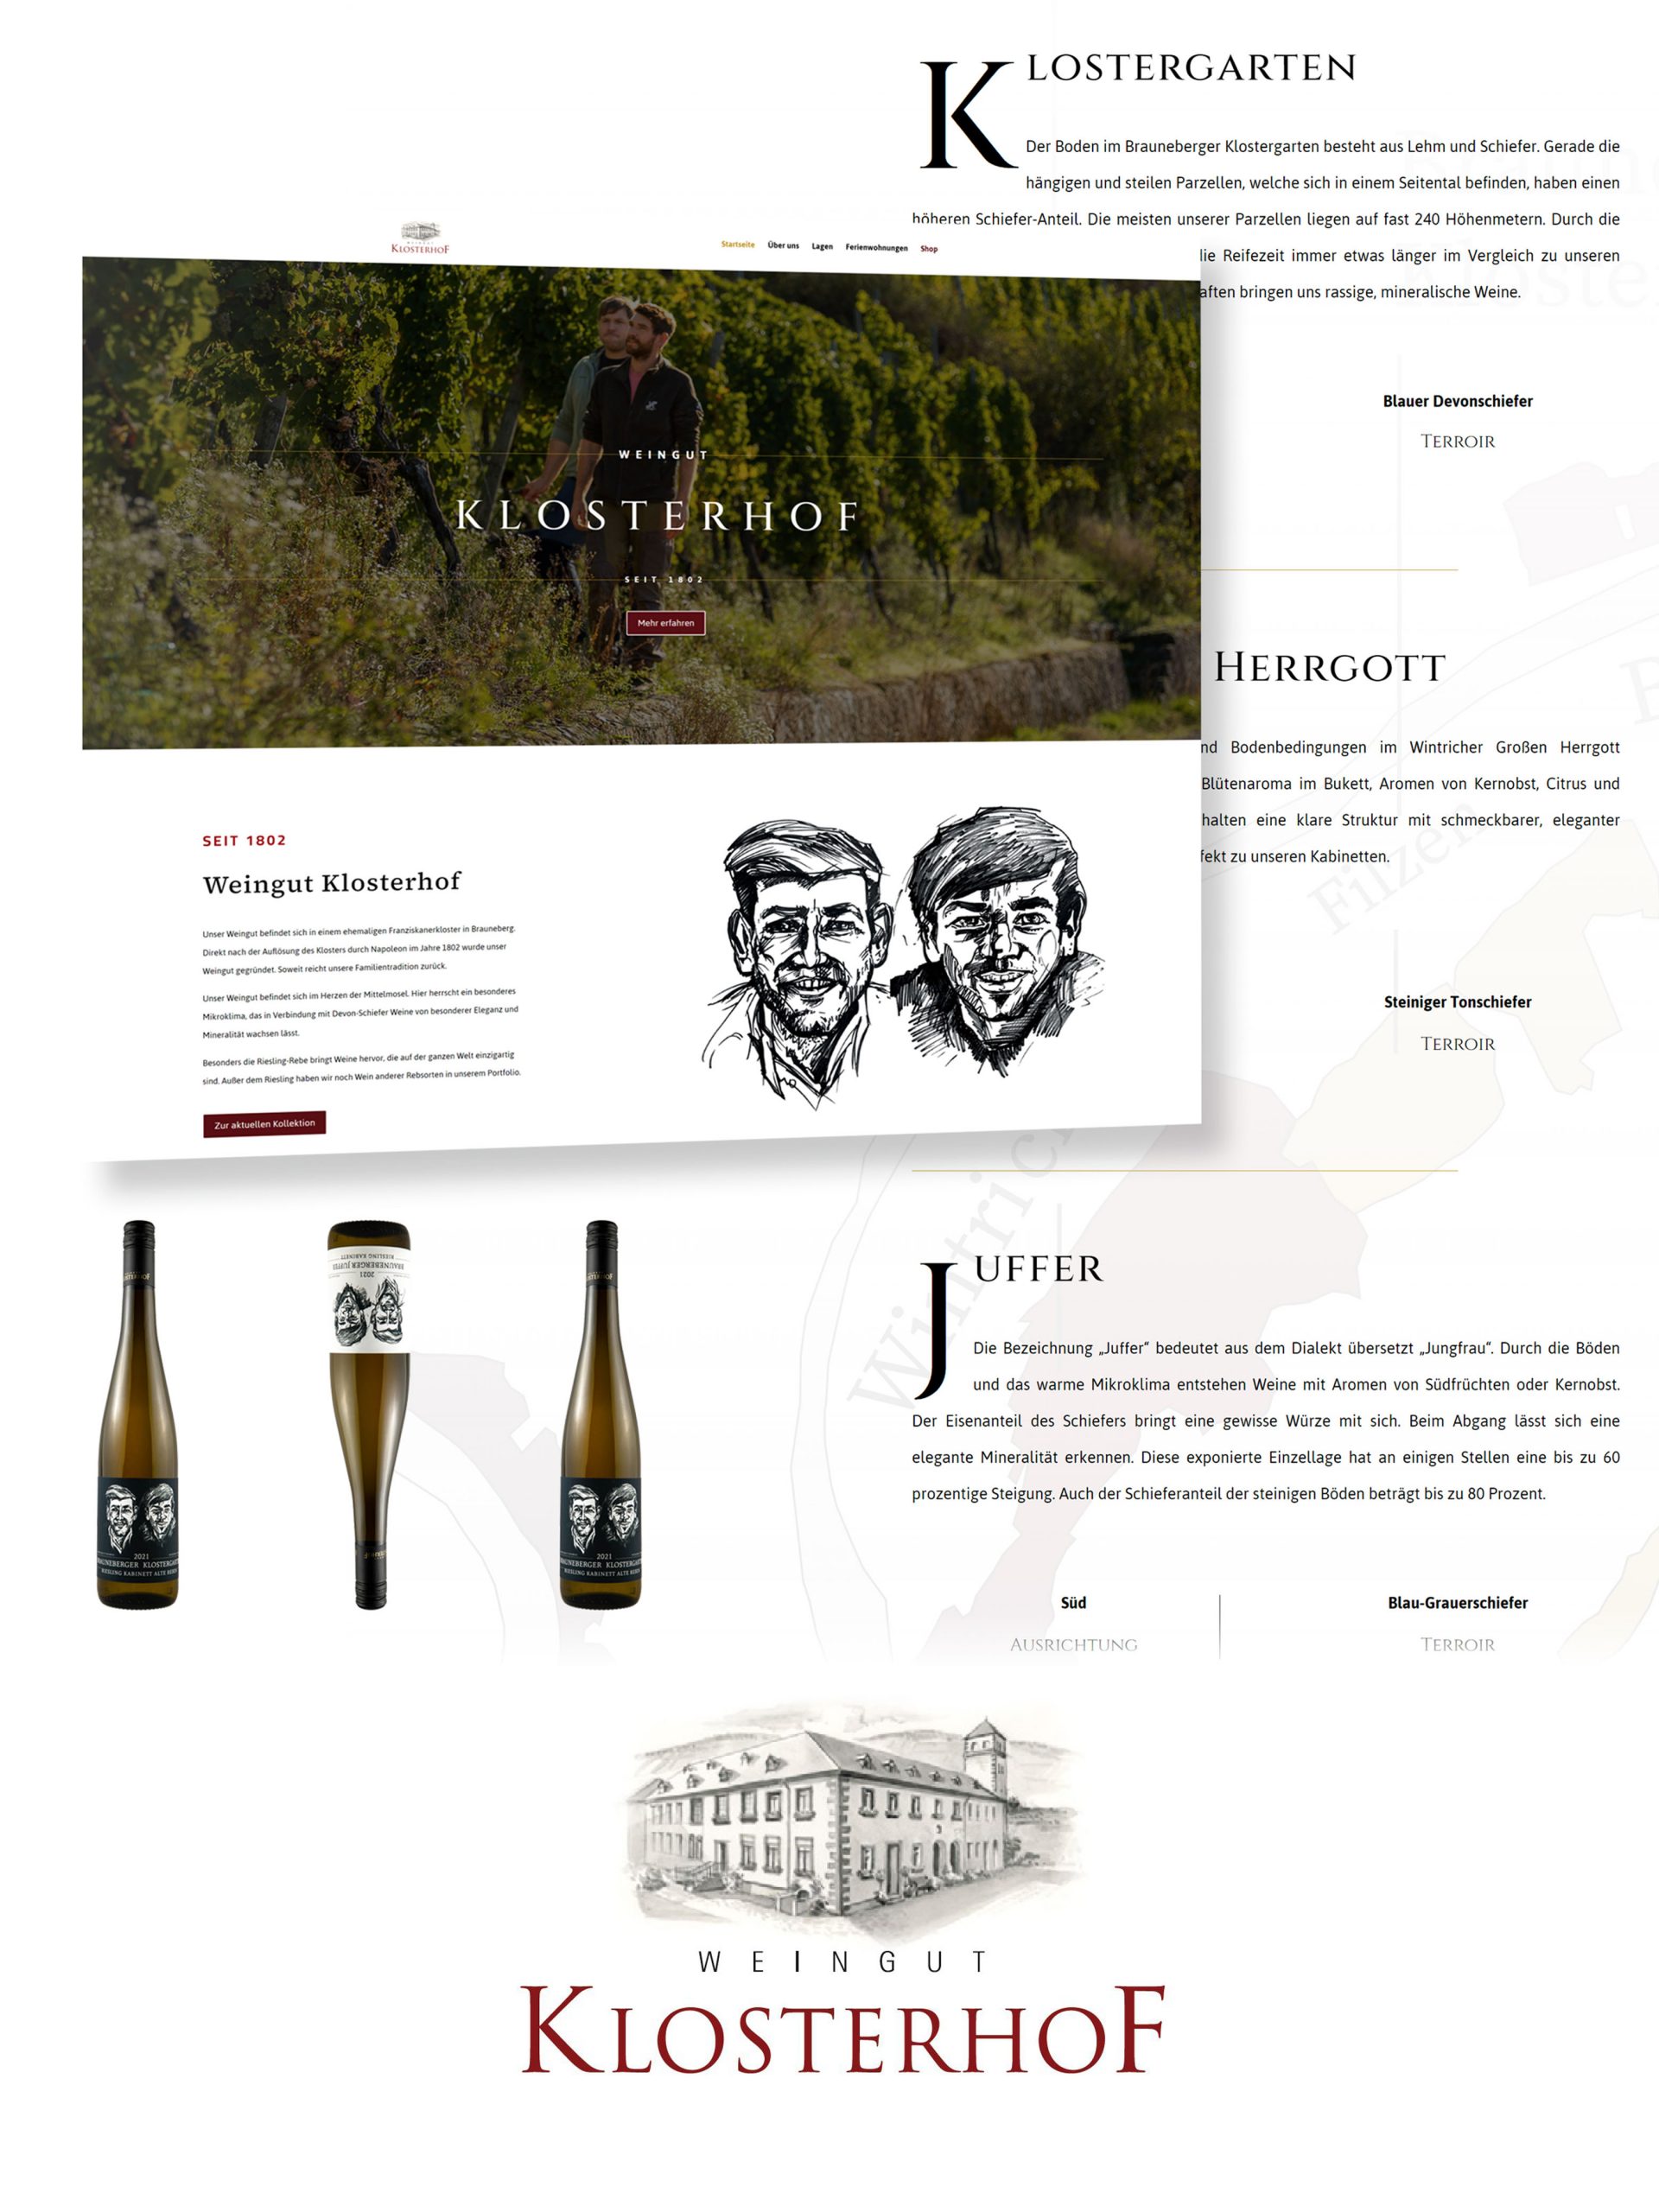 Die neue Website des Weingut Klsoterhofs wird vorgestellt.